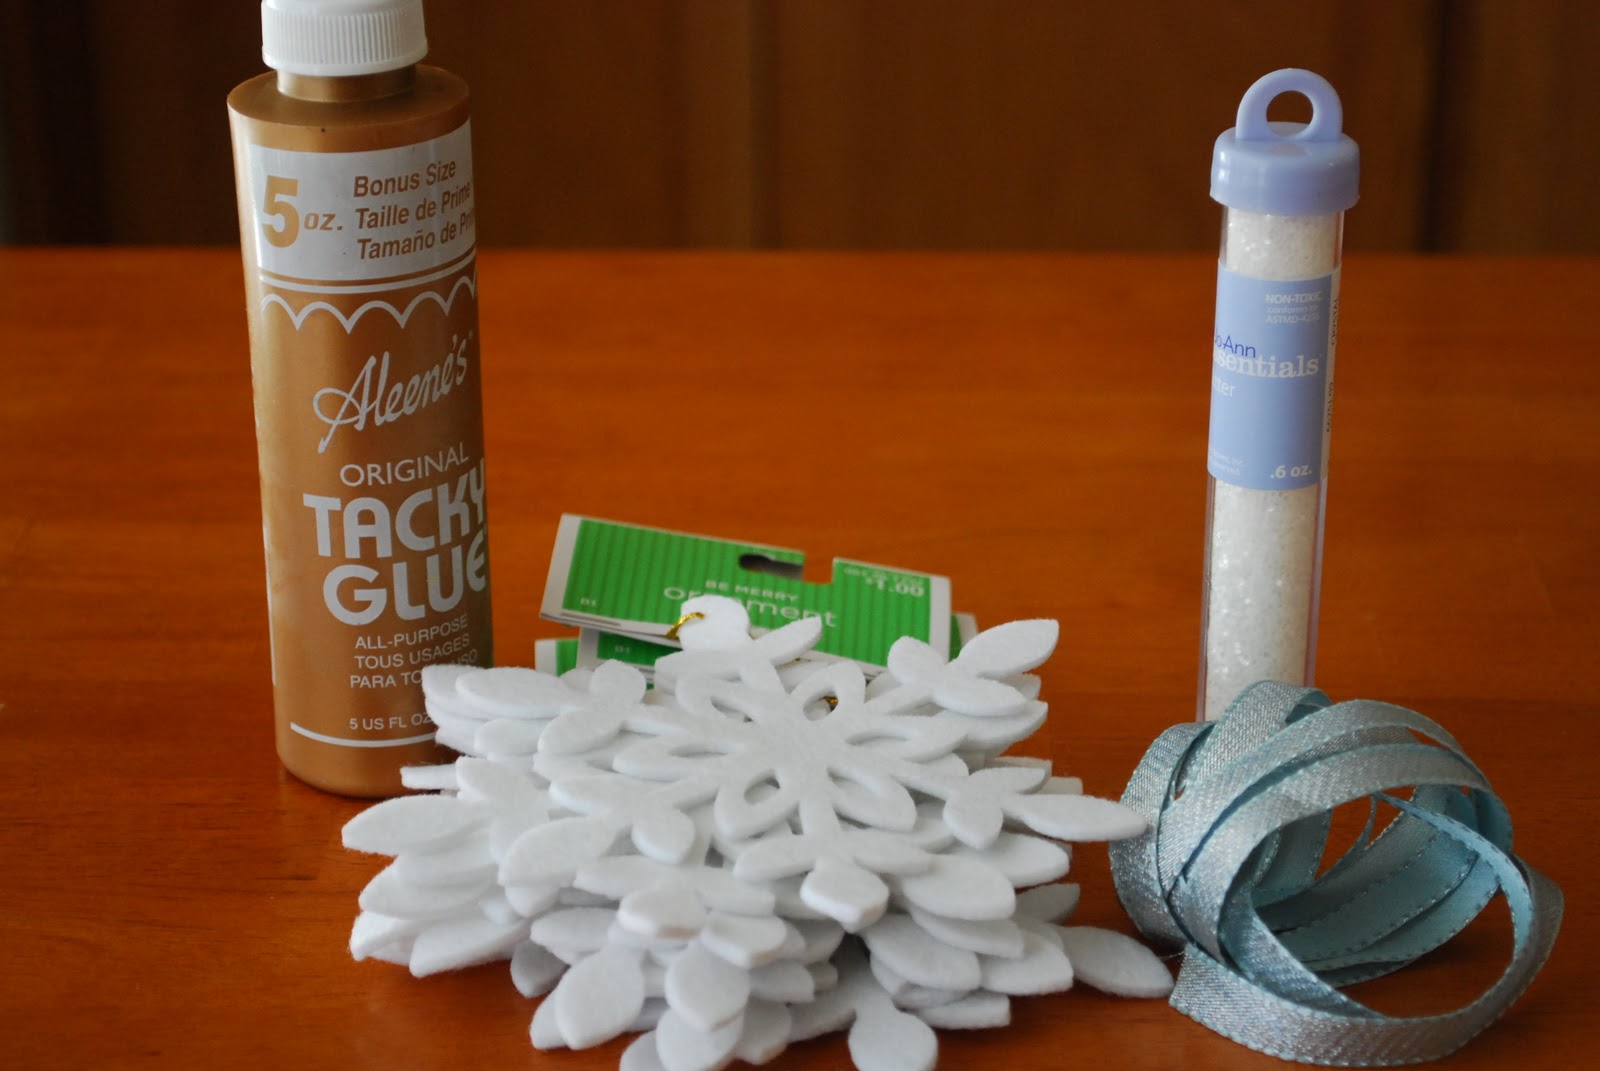 materiales necesarios para hacer manualidades caseras fáciles de hacer, copos de nieve de fieltro para hacer guirnaldas navideñas